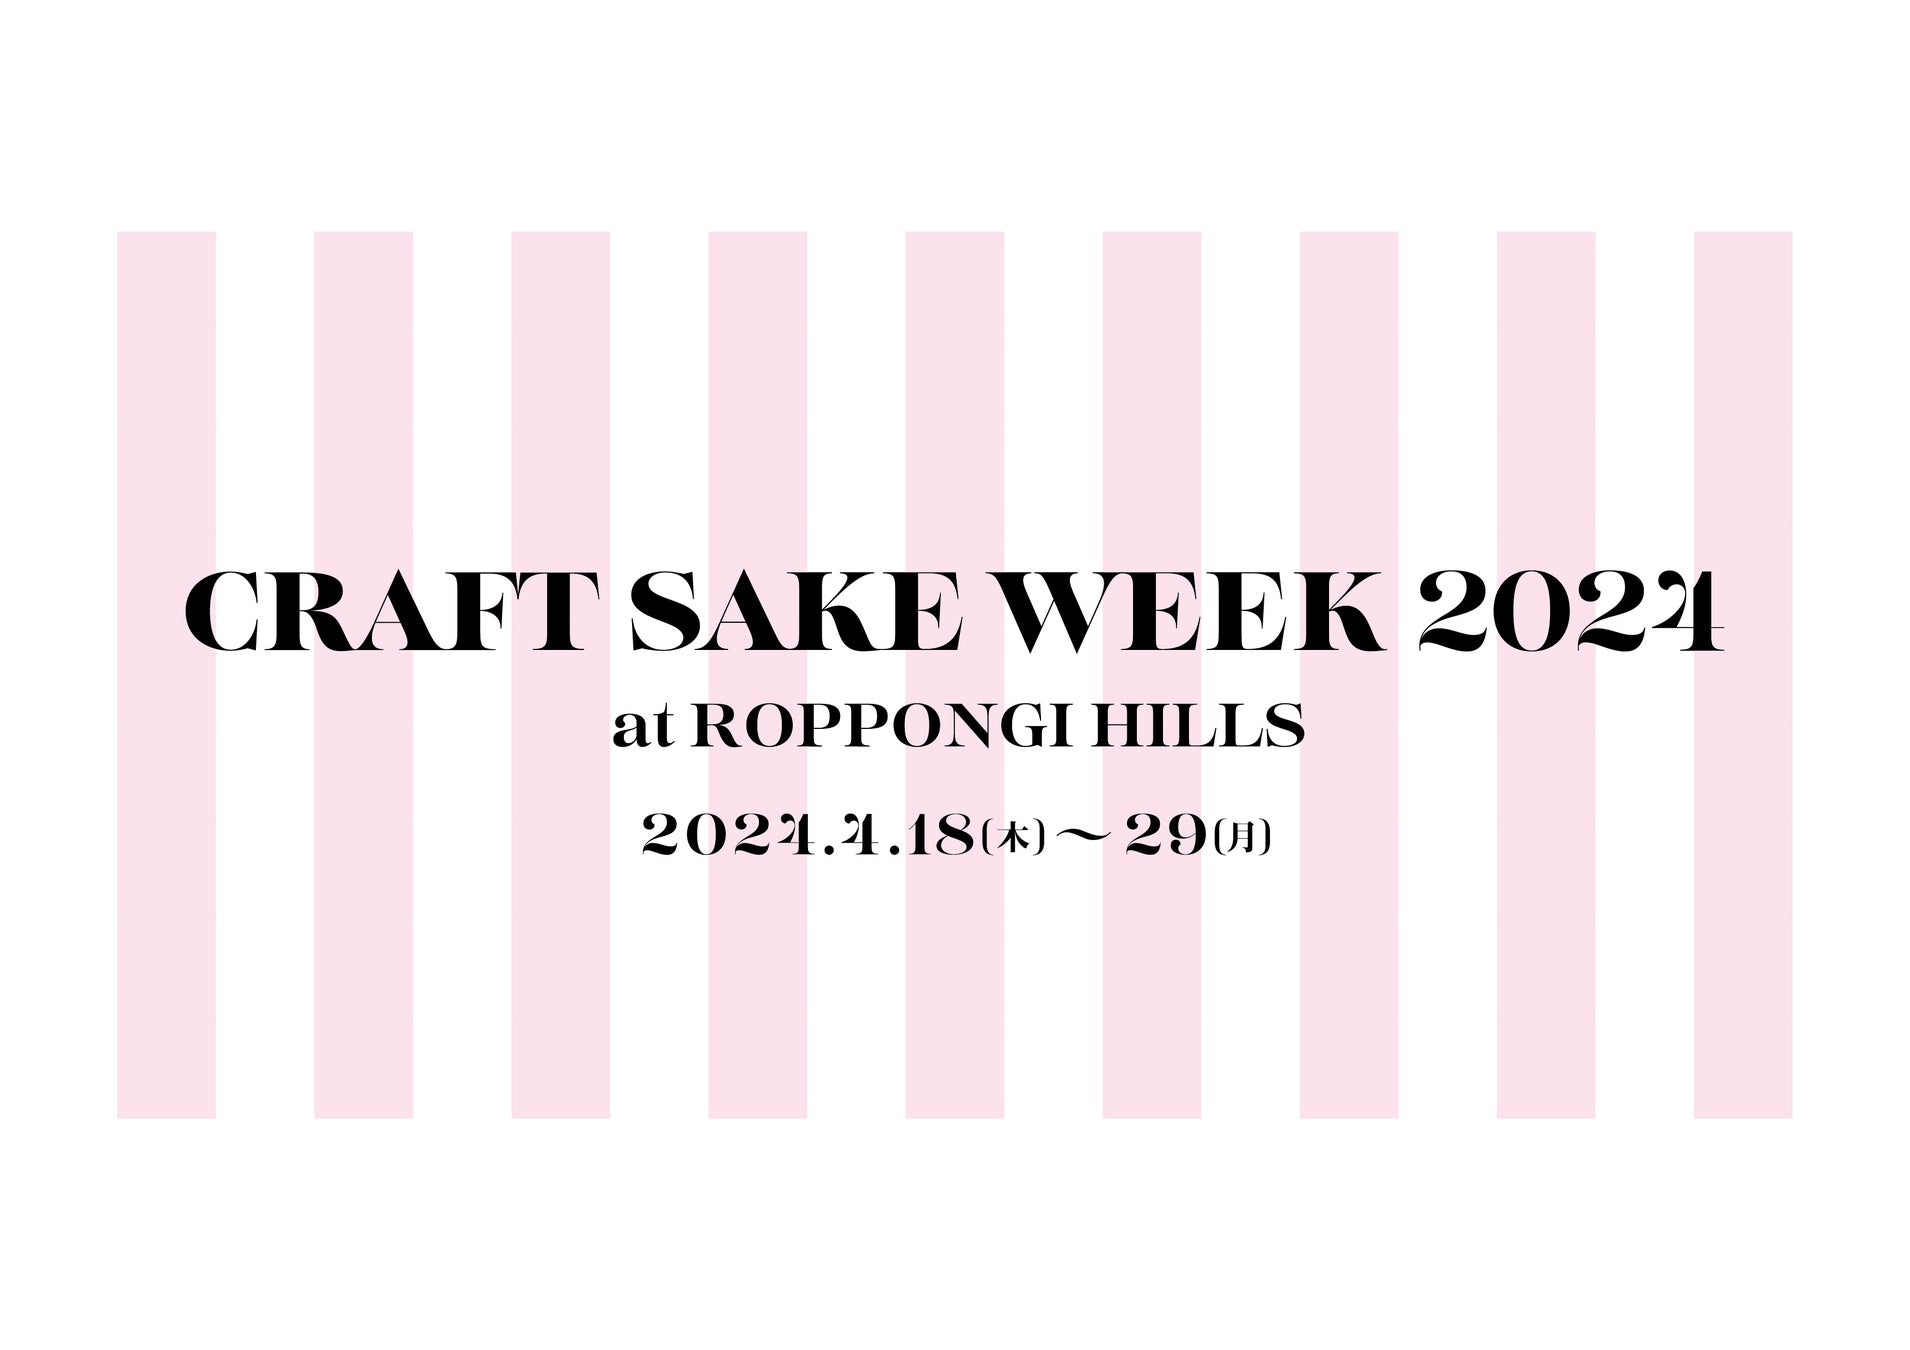 日本食文化の祭典「CRAFT SAKE WEEK」が4/18(木)〜29(月・祝)で開催が決定「CRAFT SAKE WEEK 2024 at ROPPONG...